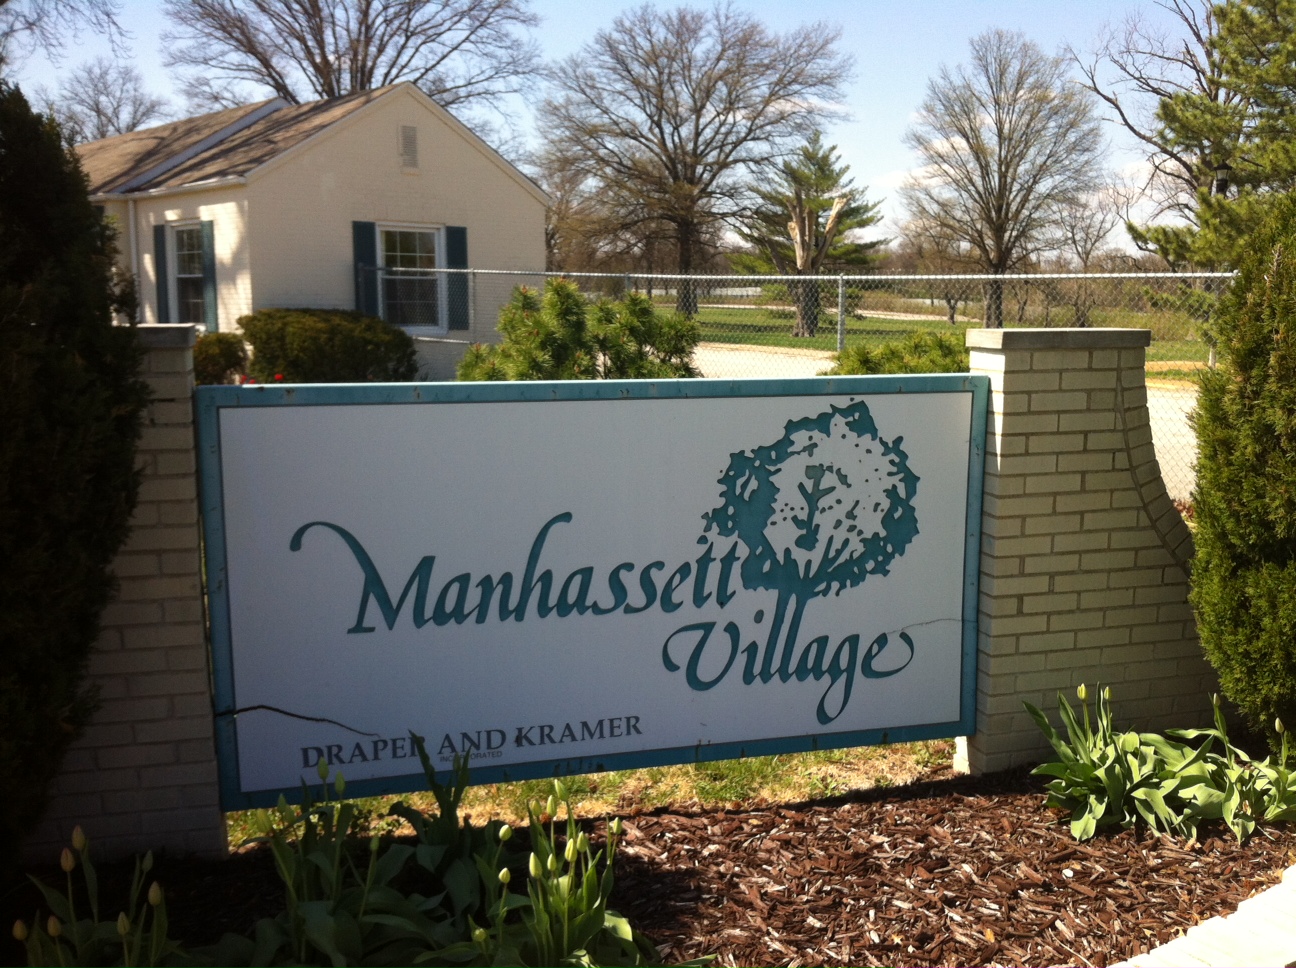 Manhassett Village in Brentwood School District superintendent says